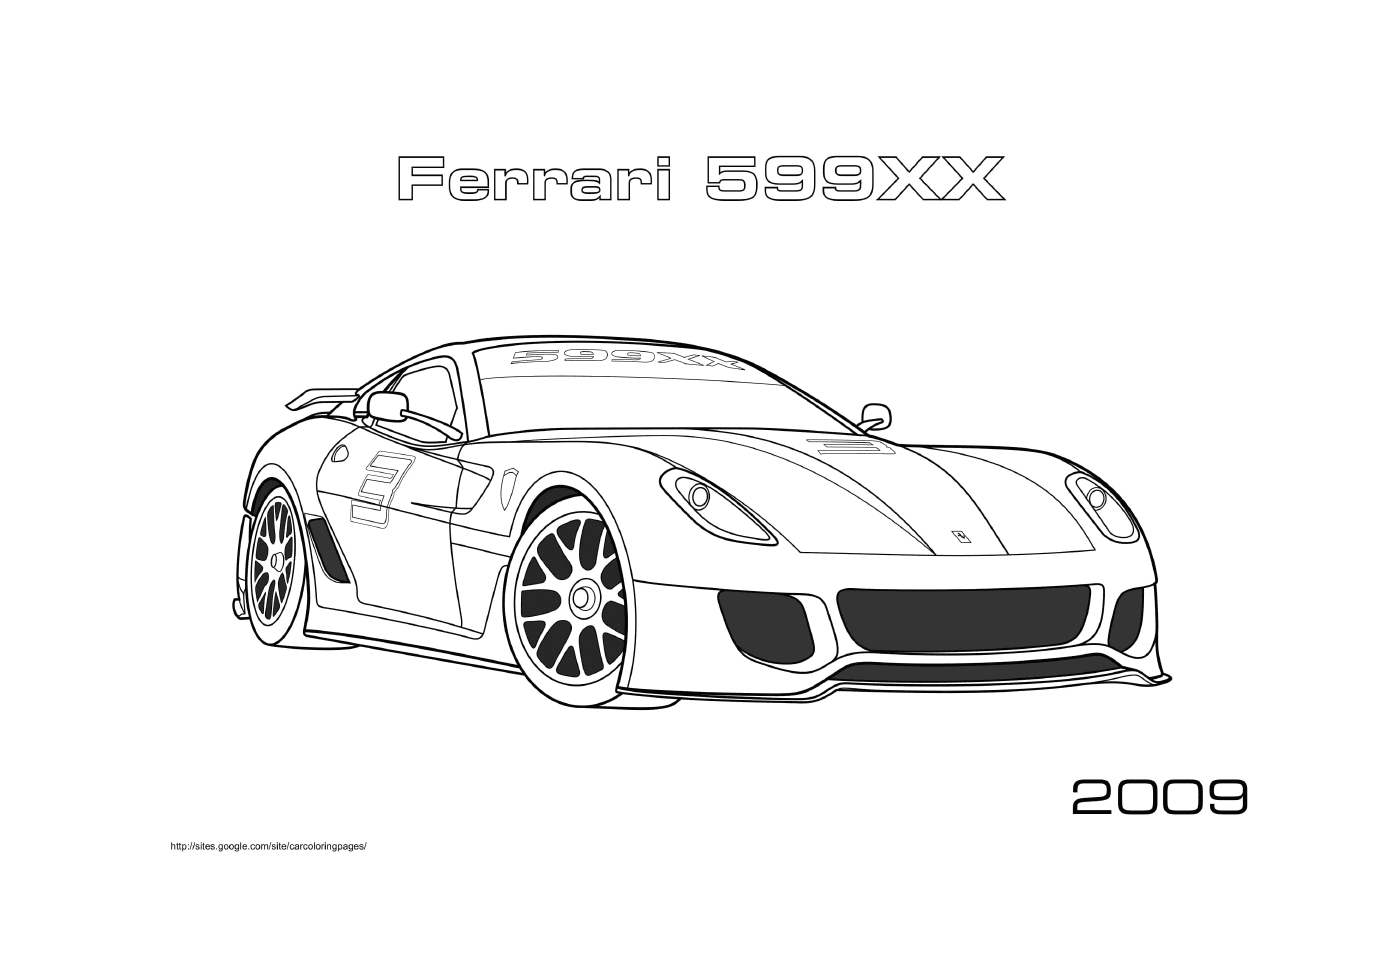  Ferrari 599xx2009 